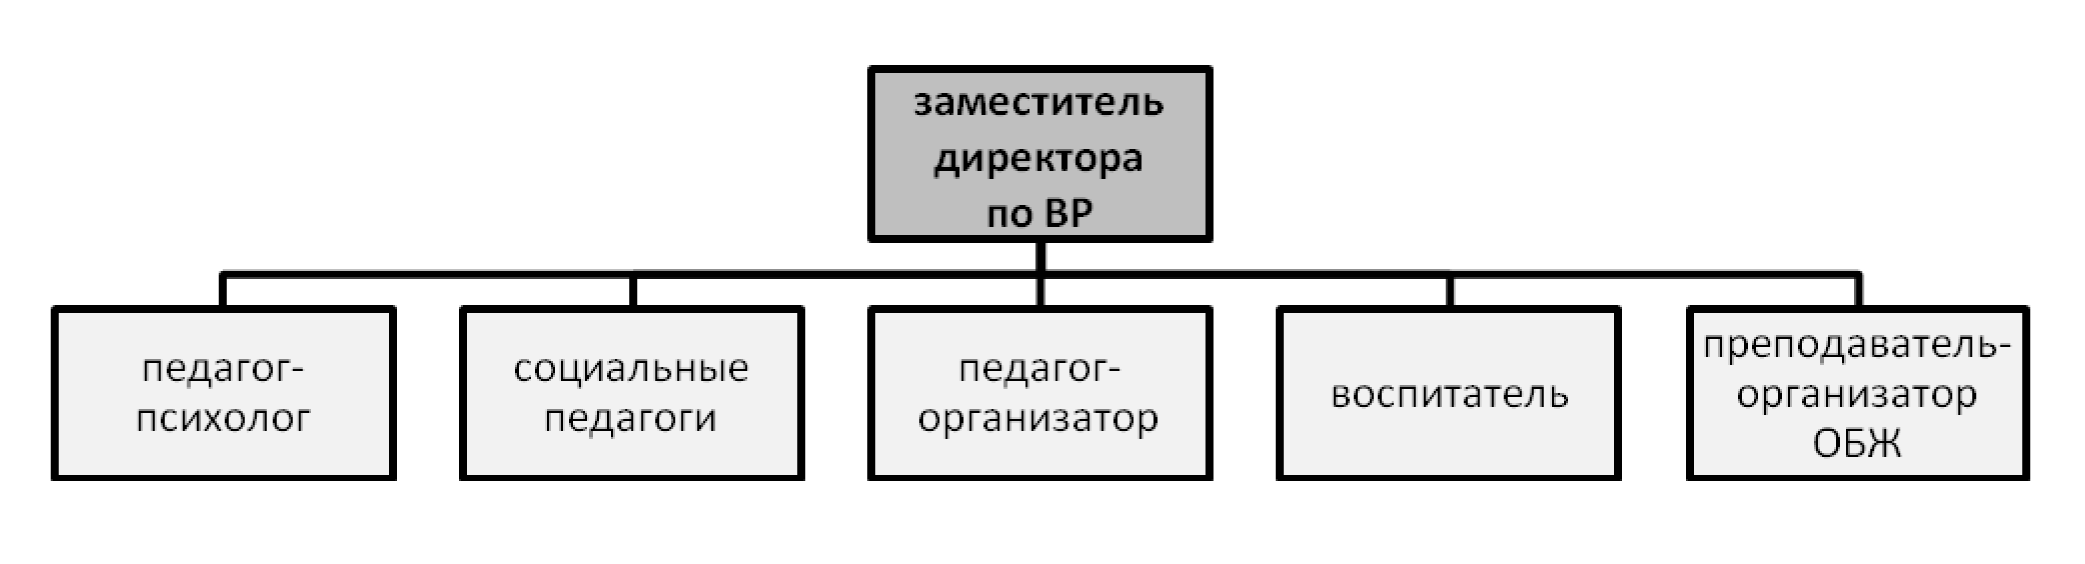 Структура службы ВР